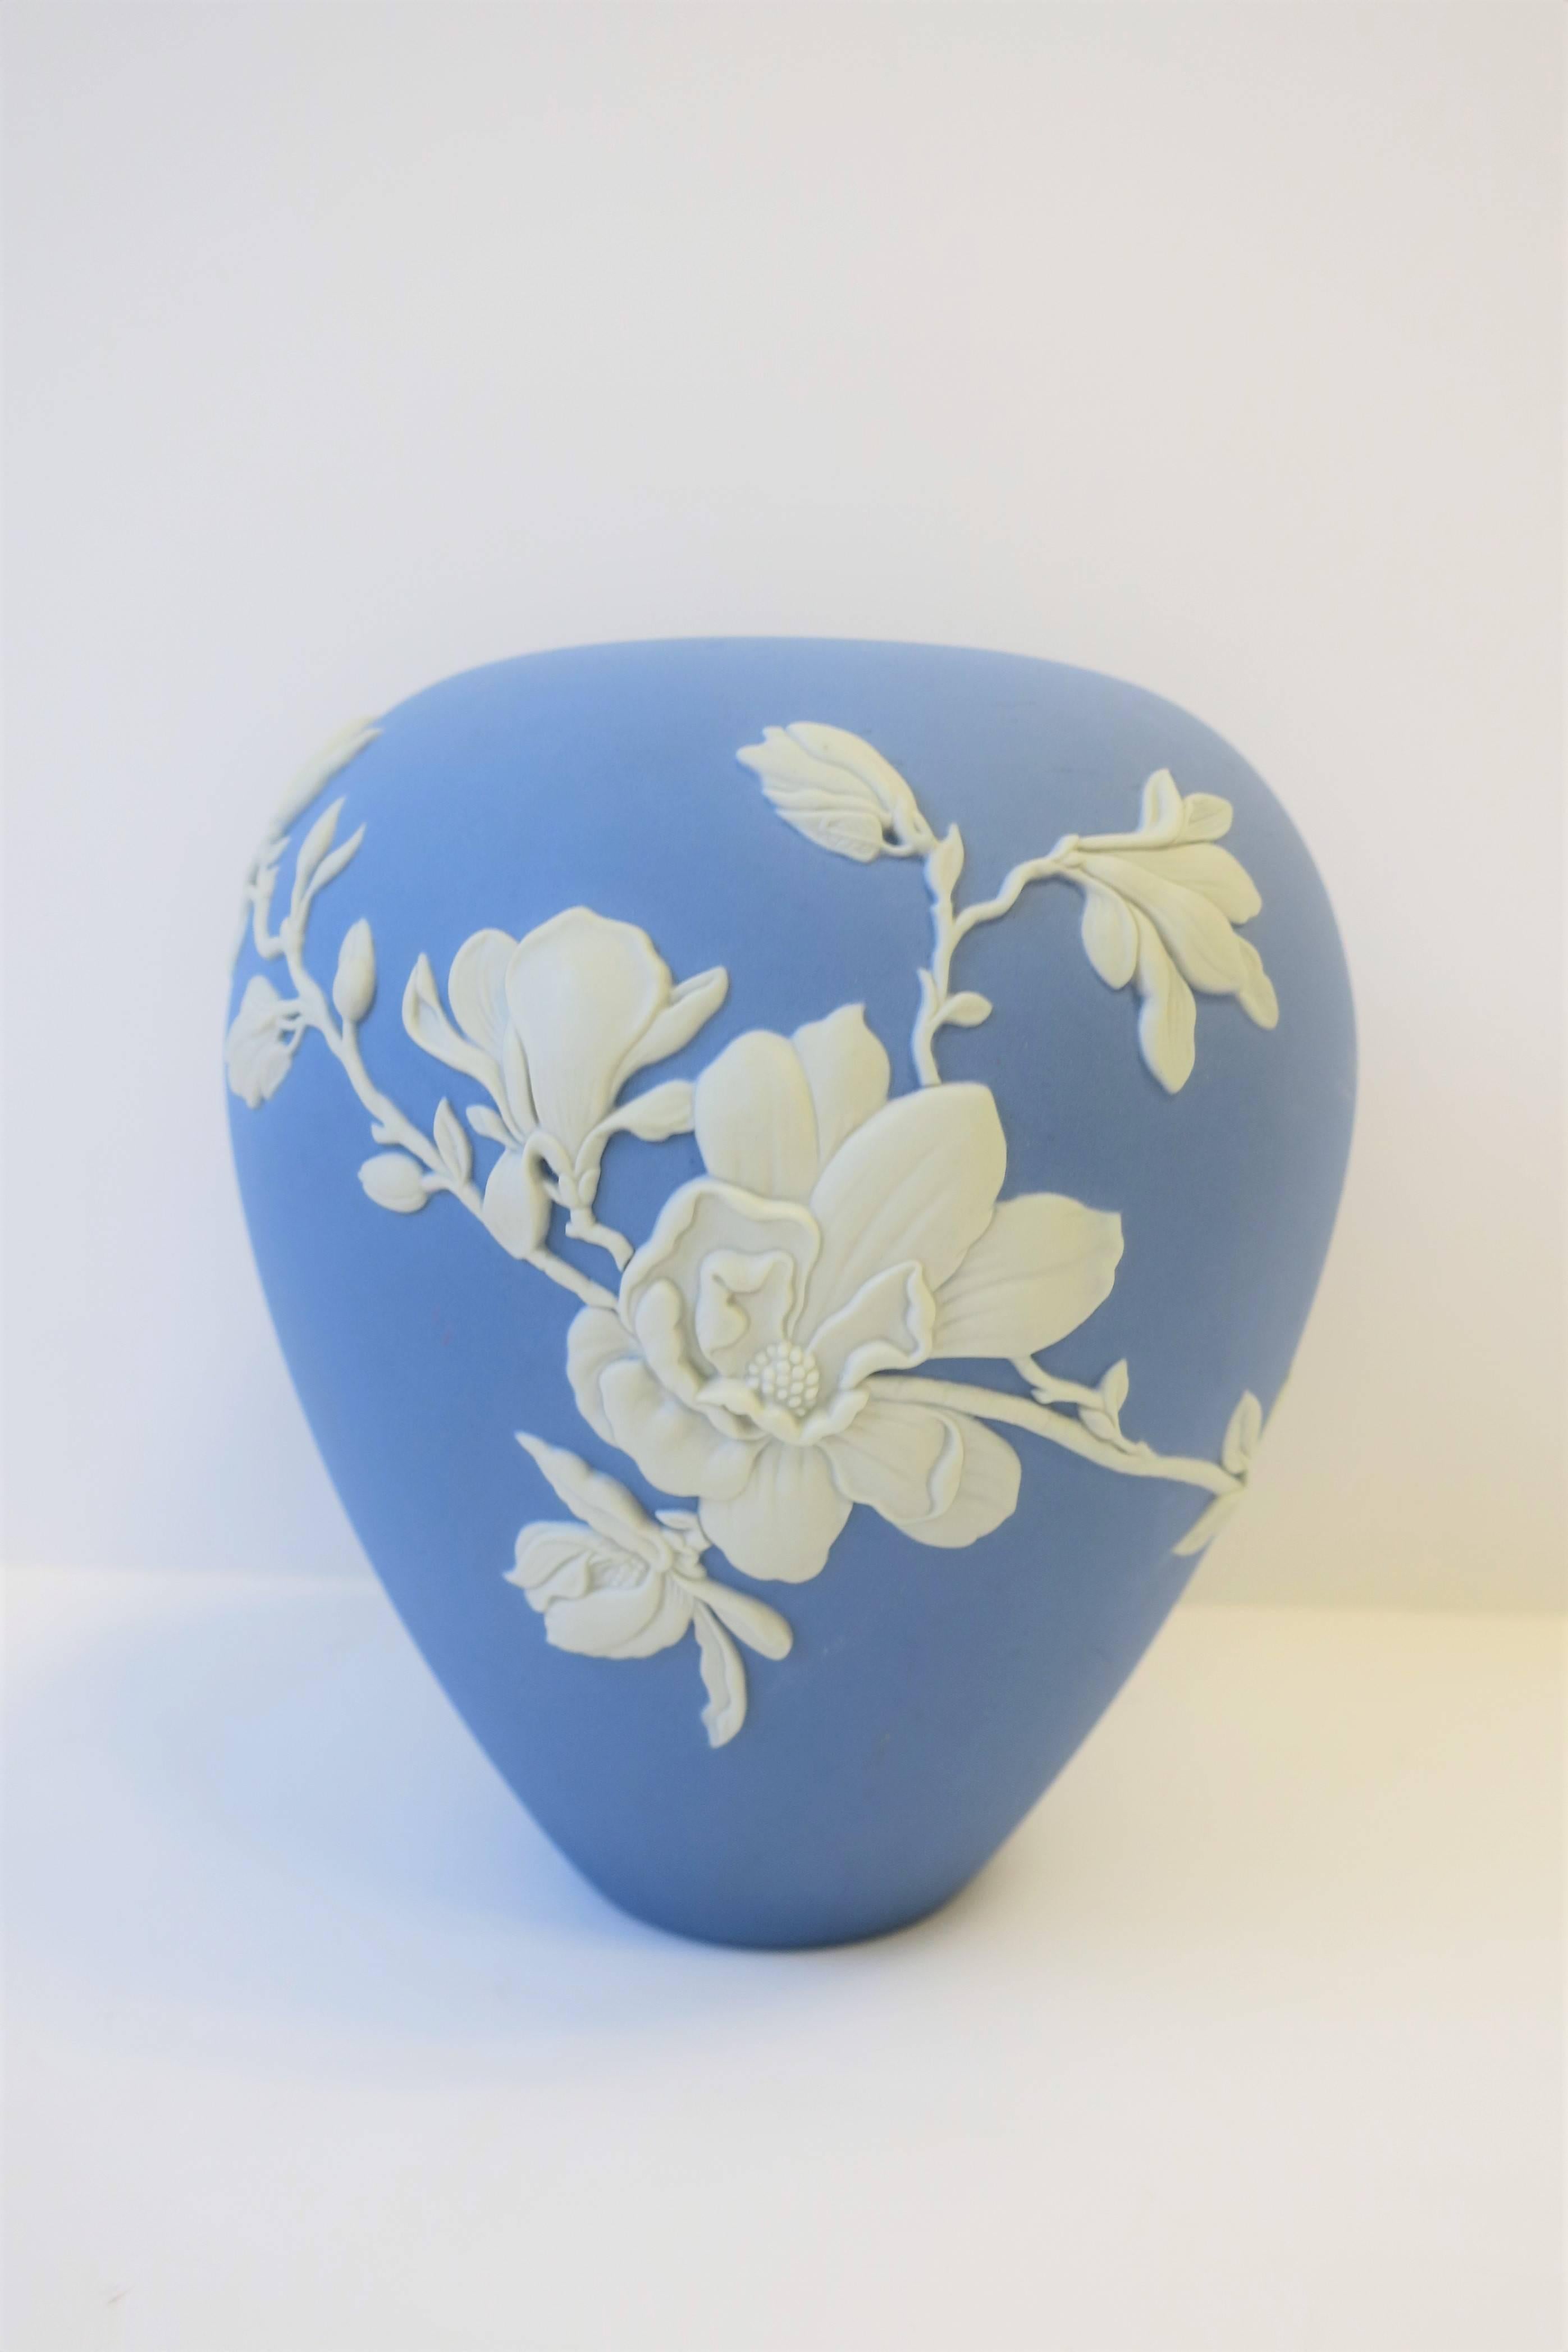 Unglazed Blue and White Vase by Wedgwood, 21st Century